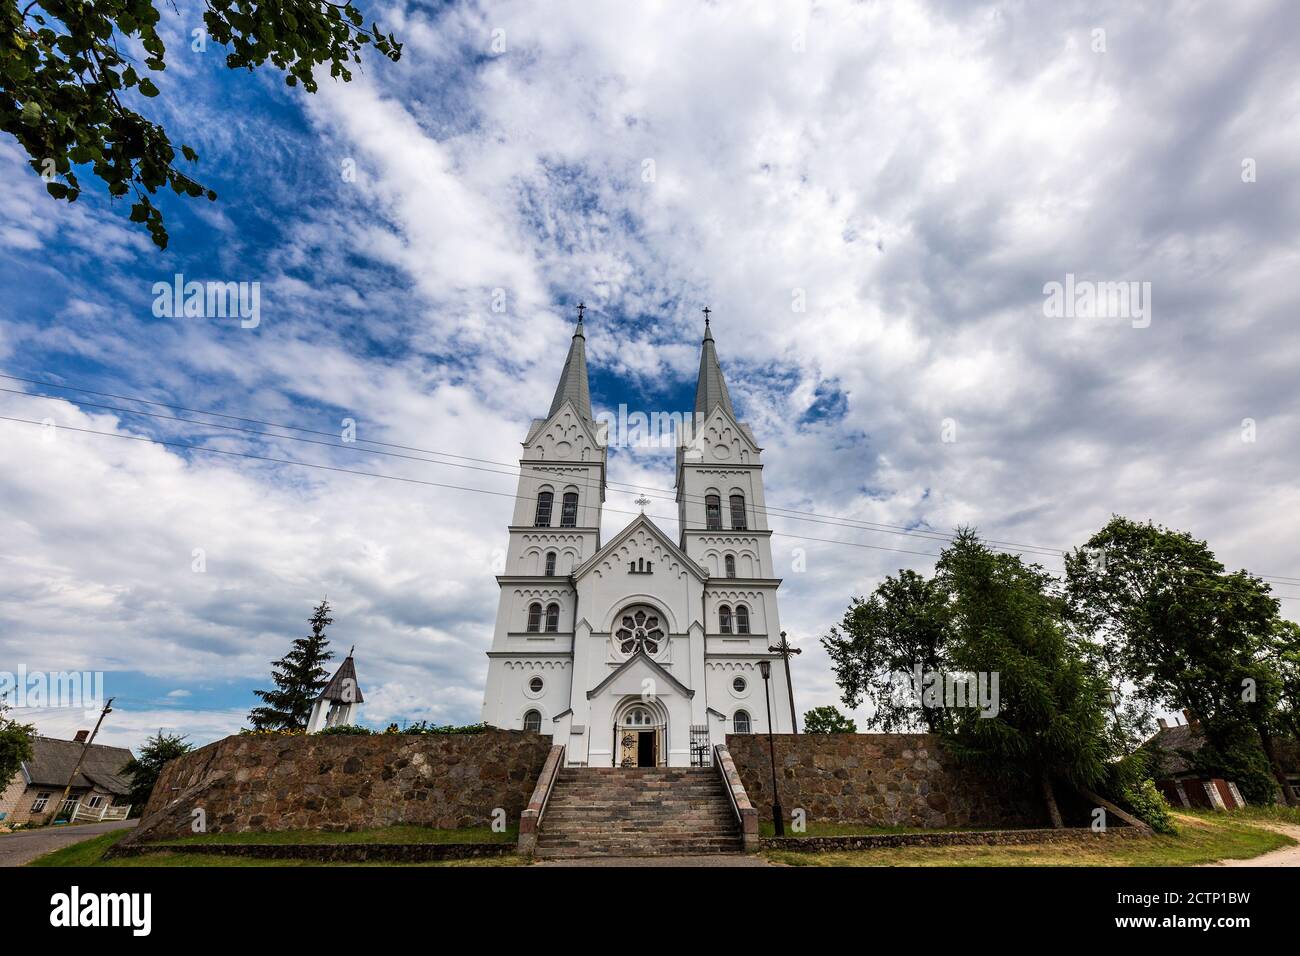 L'Église de la Divine Providence est une église catholique de la ville agricole de Slobodka Braslav, en Biélorussie. Un monument architectural dans la ne Banque D'Images